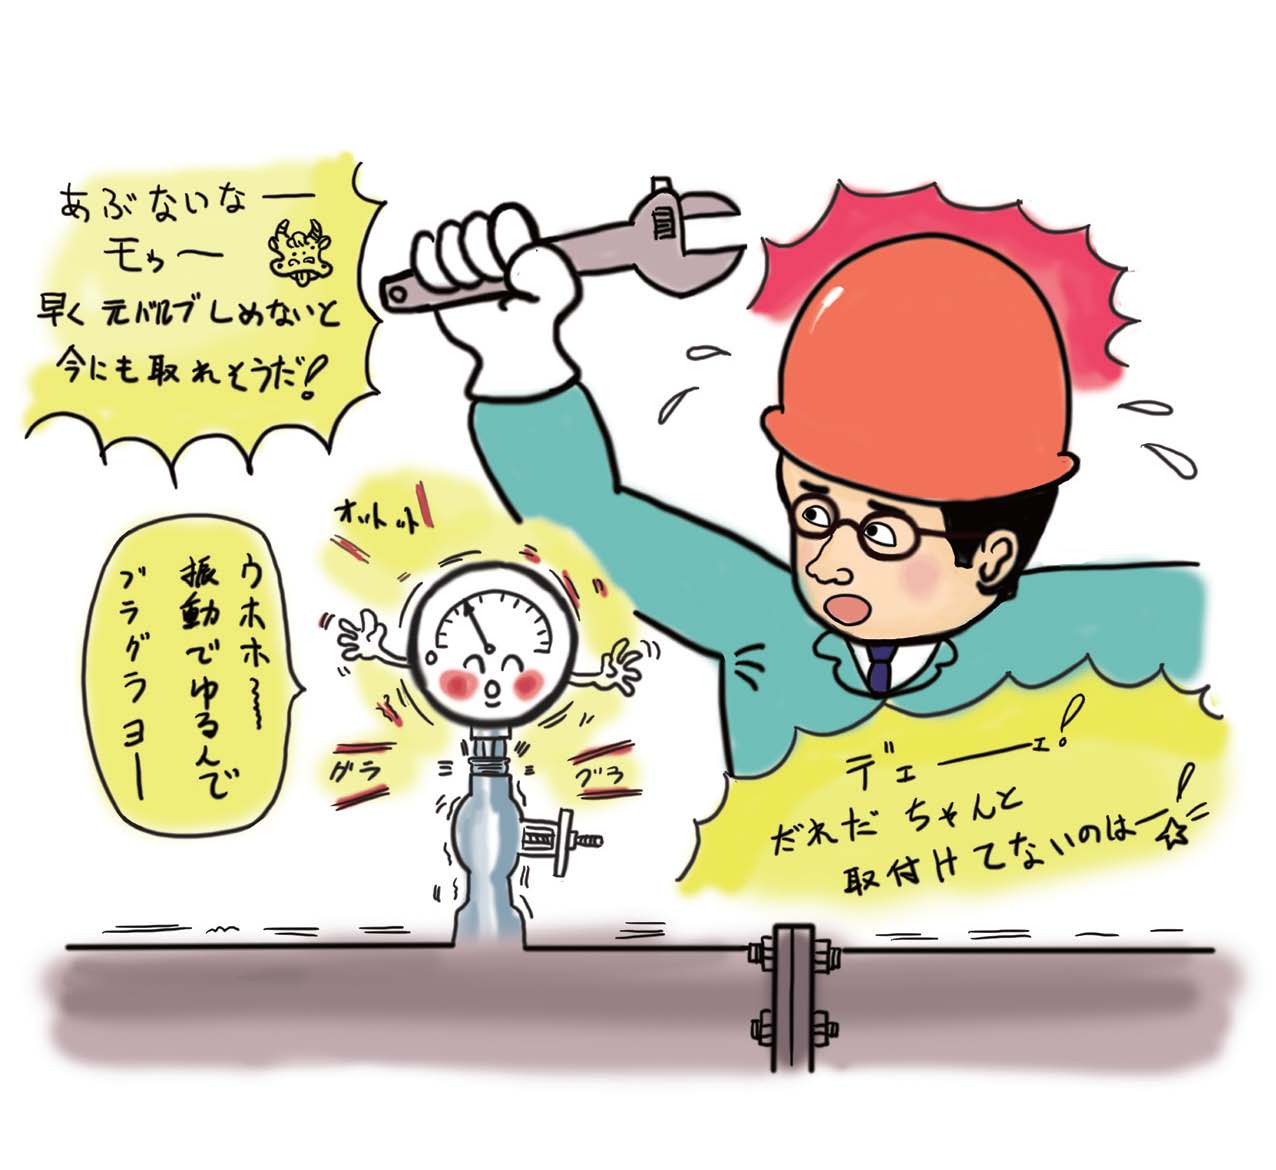 日本工業出版 オススメ新刊本 イラストで学ぶプラントの安全 ヒヤリハット体験事例123ハンドブック